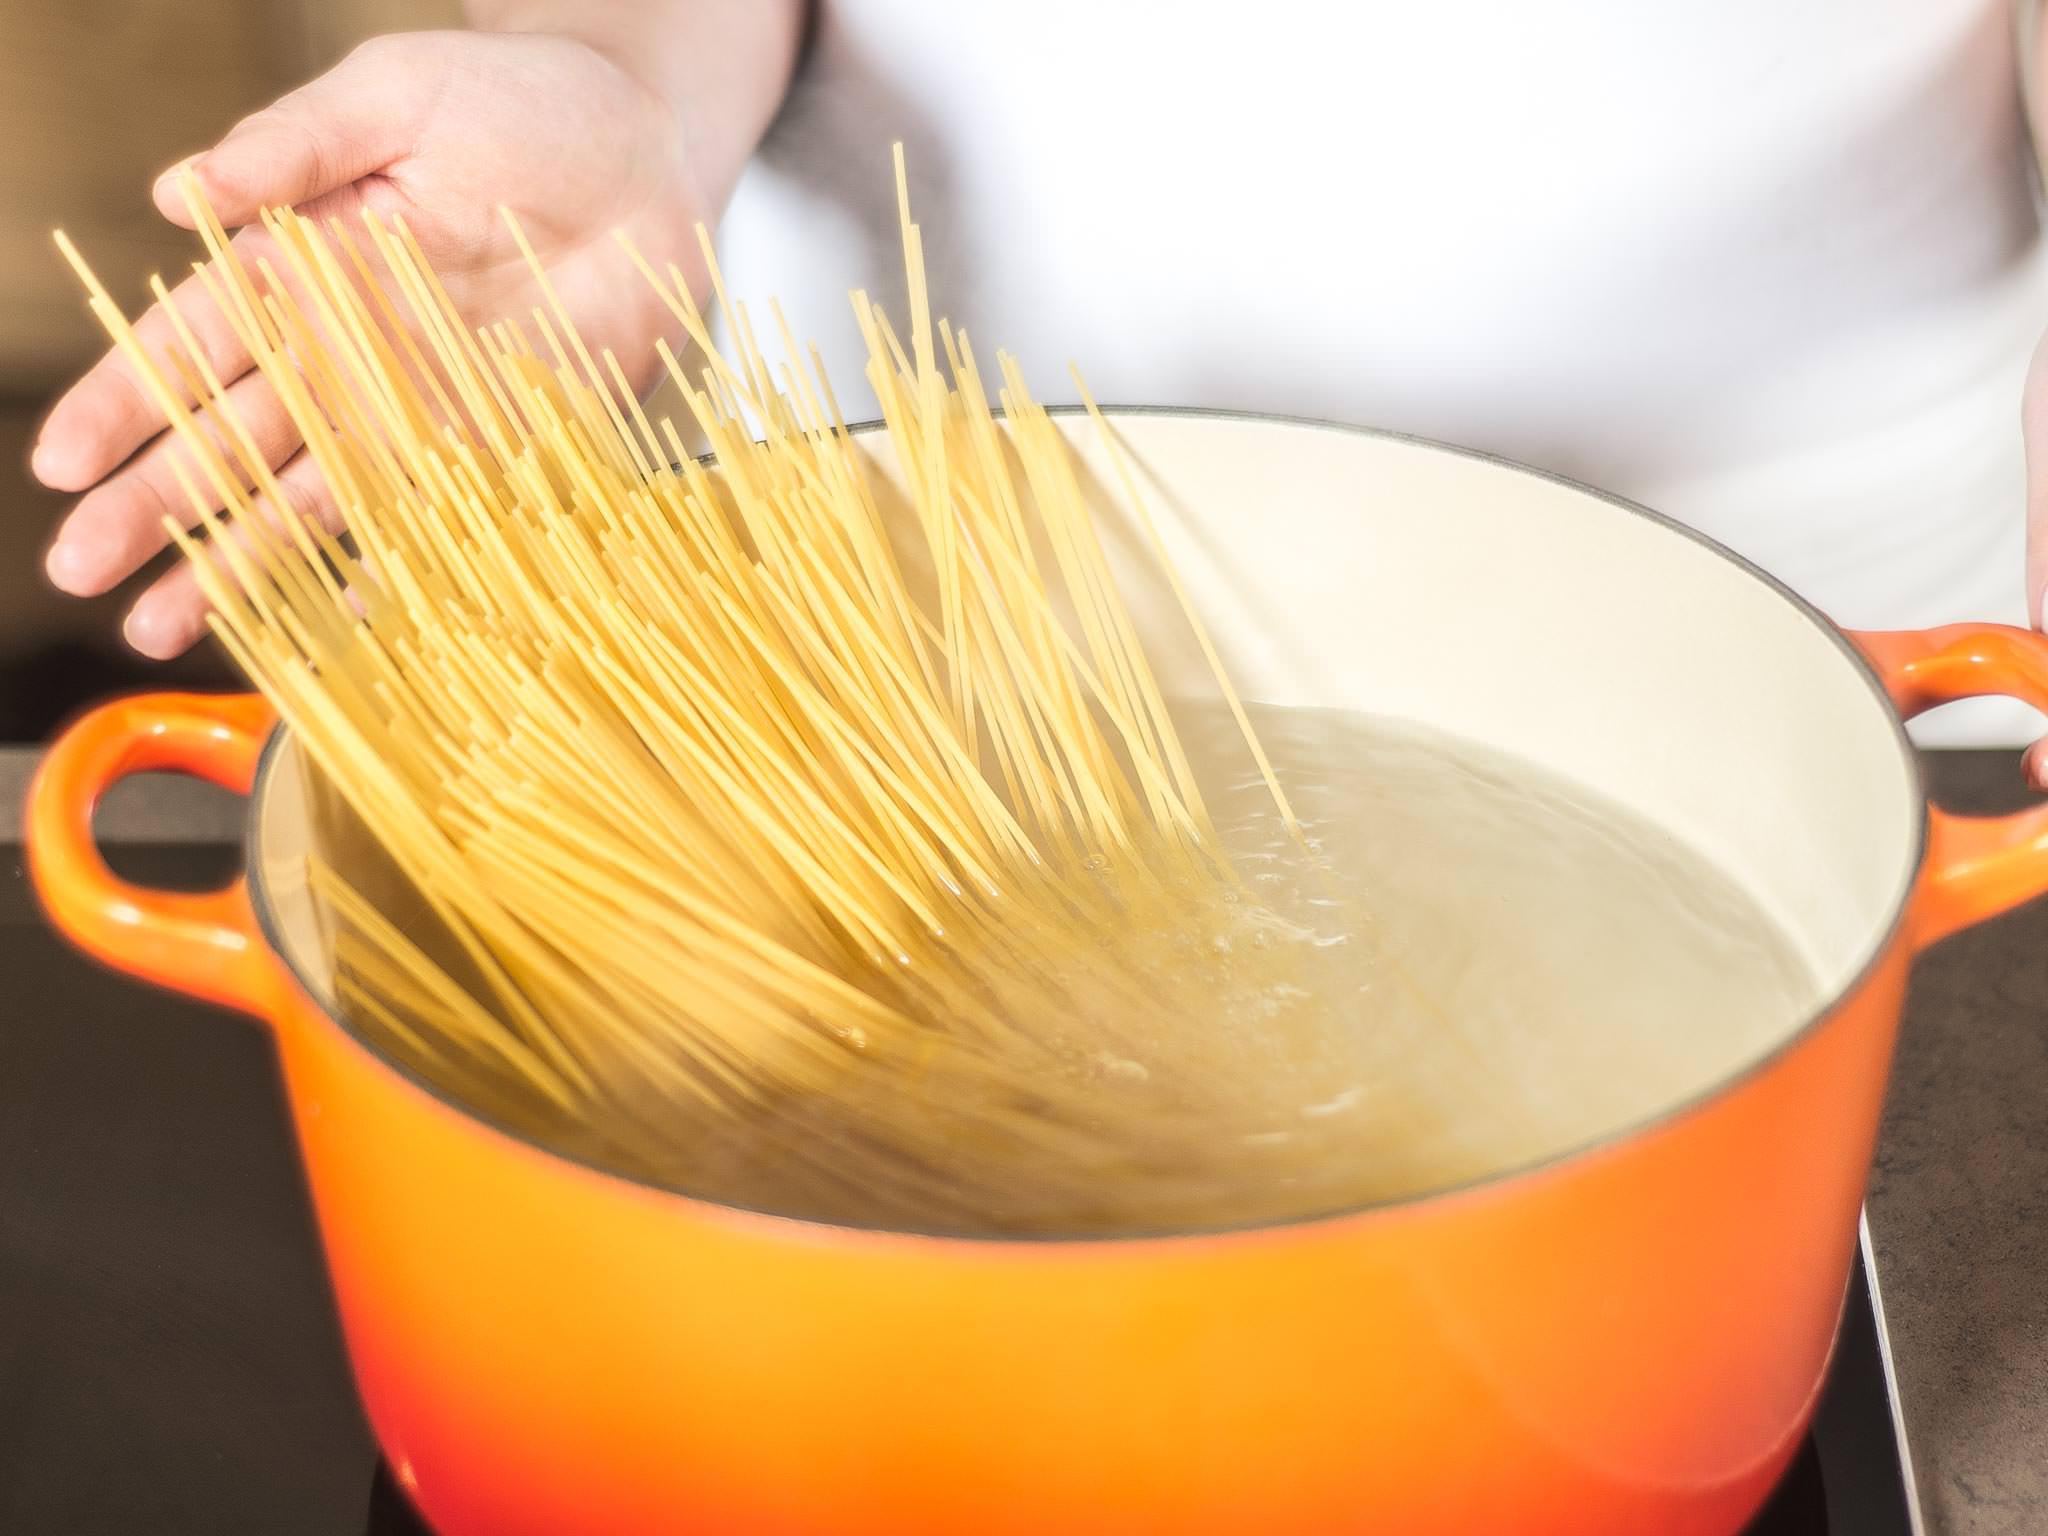 Baked Spaghetti Bolognese